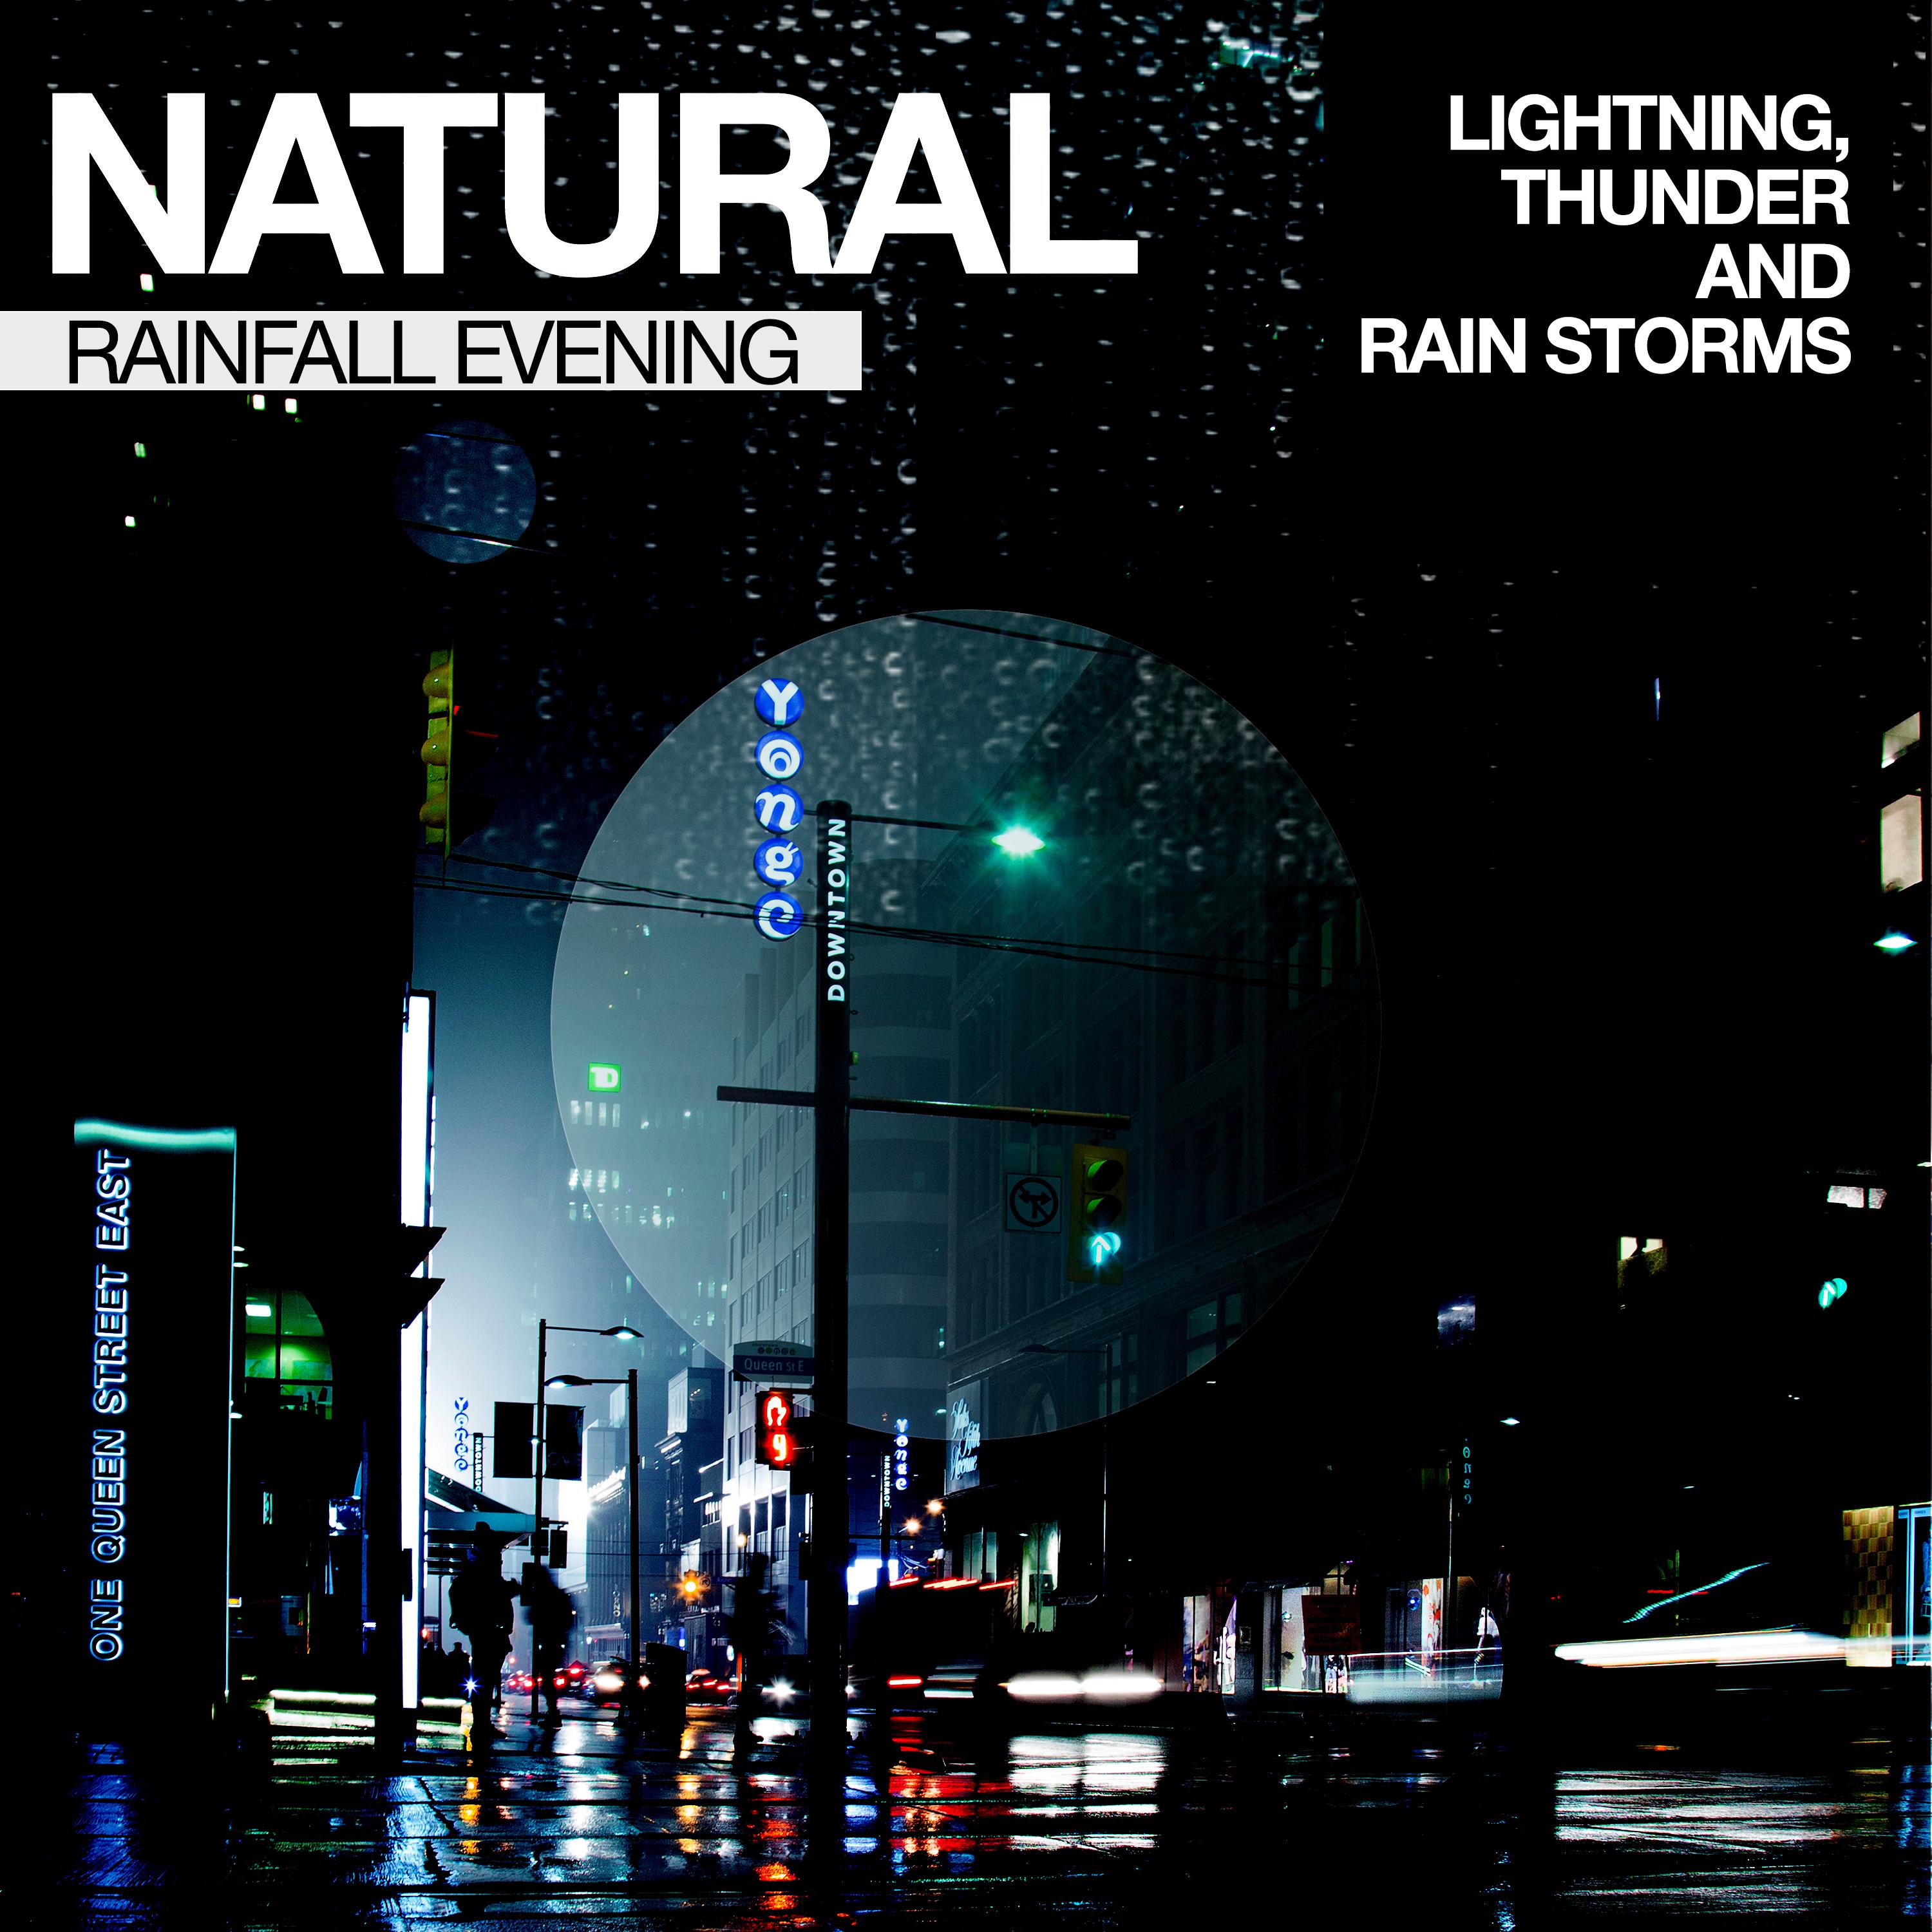 Natural Rainfall Evening